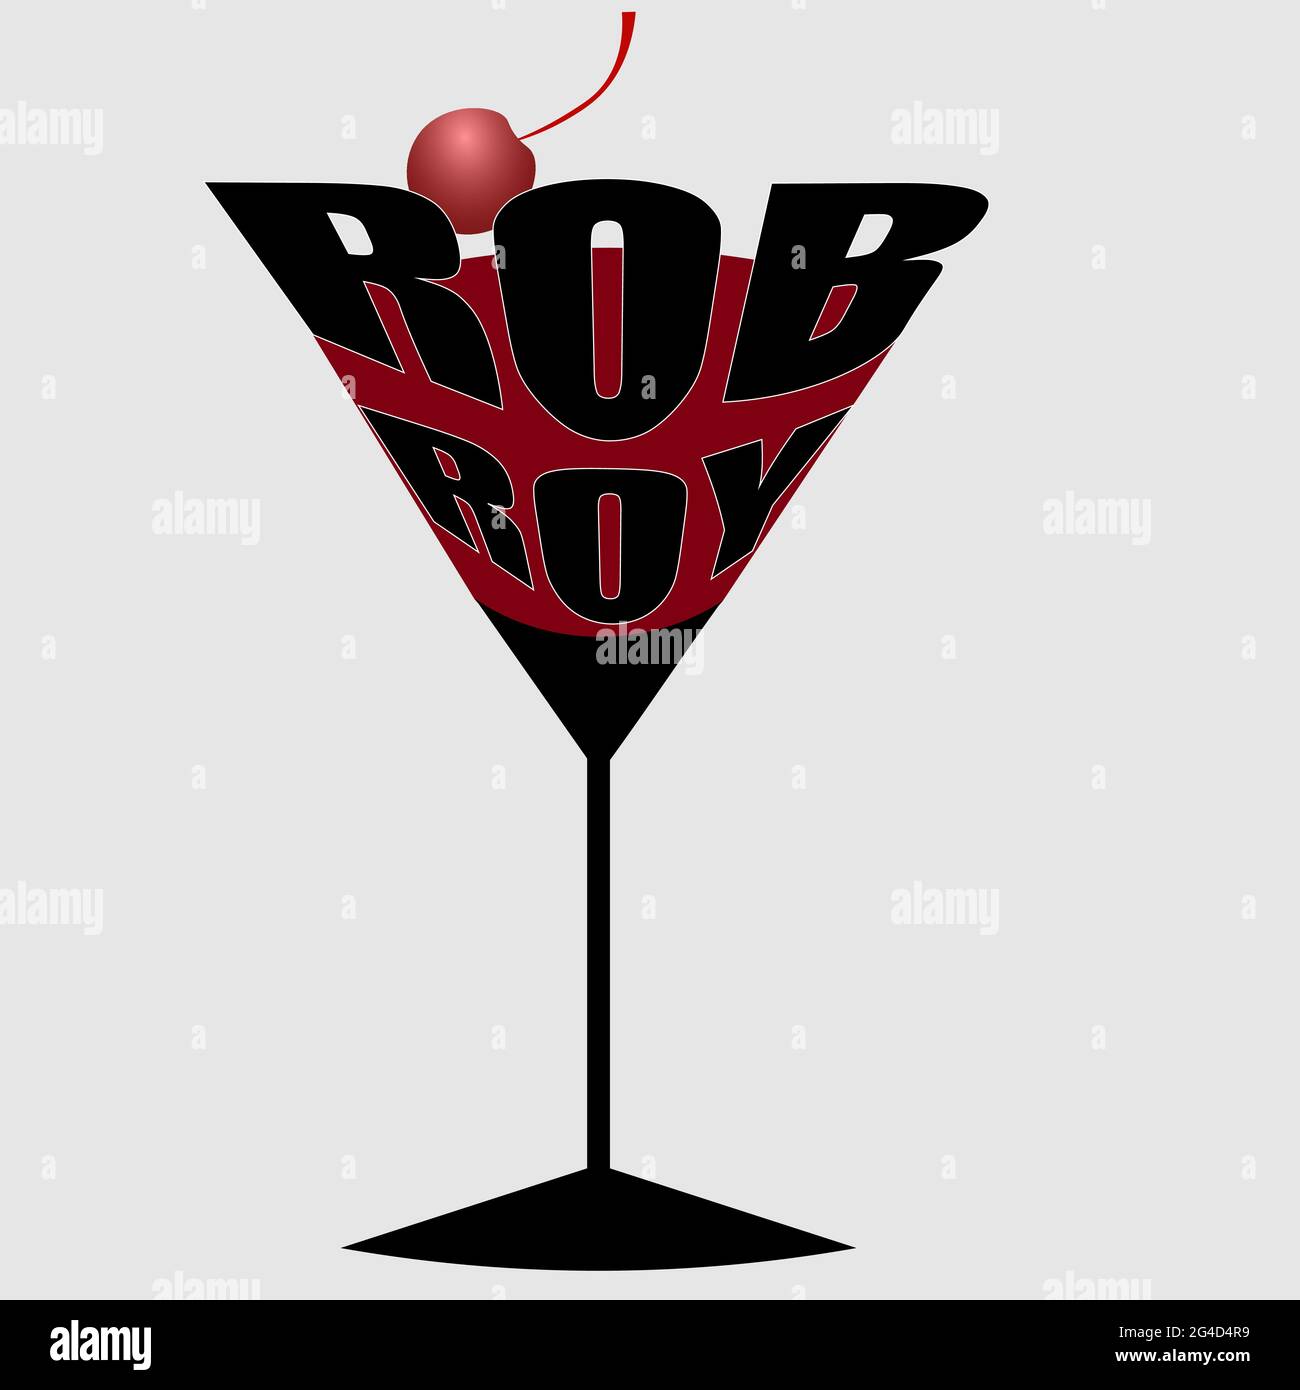 Minimalistischer Schriftzug des Rob Roy Cocktail-Logos auf hellem Hintergrund 2 Stock Vektor